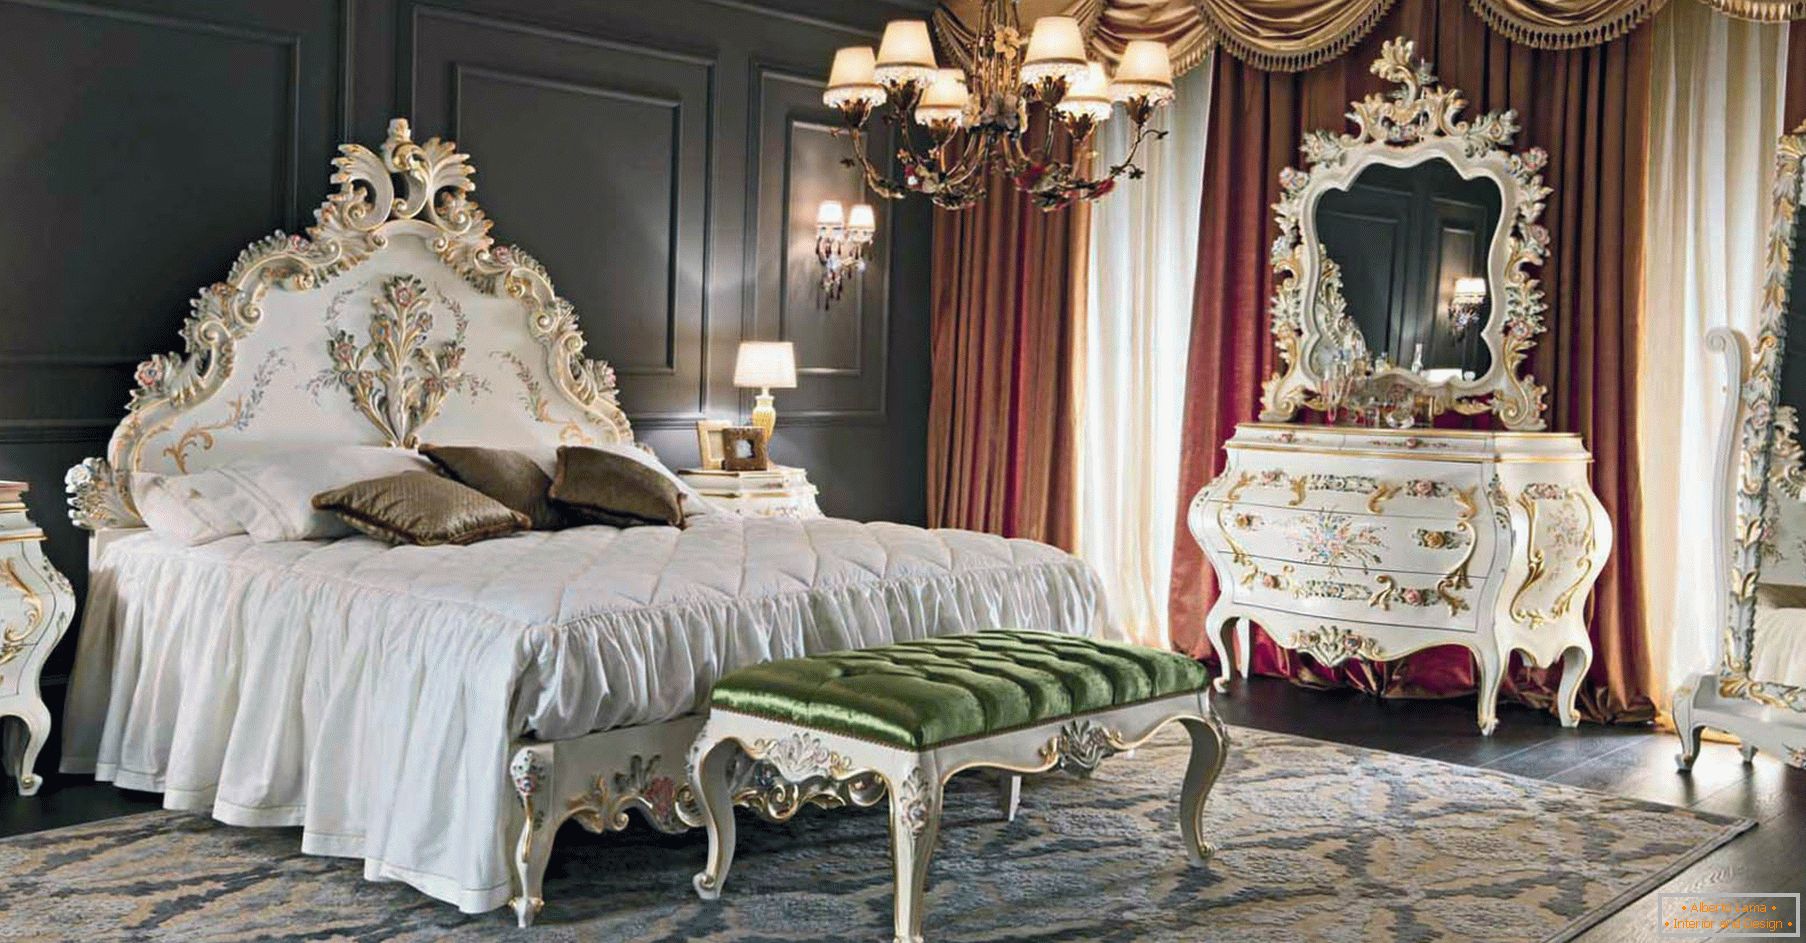 Za dekoraciju spavaće sobe koristi se kontrast tamno braon, zlatne, crvene i bijele boje. Namještaj je odabran prema stilu baroka.